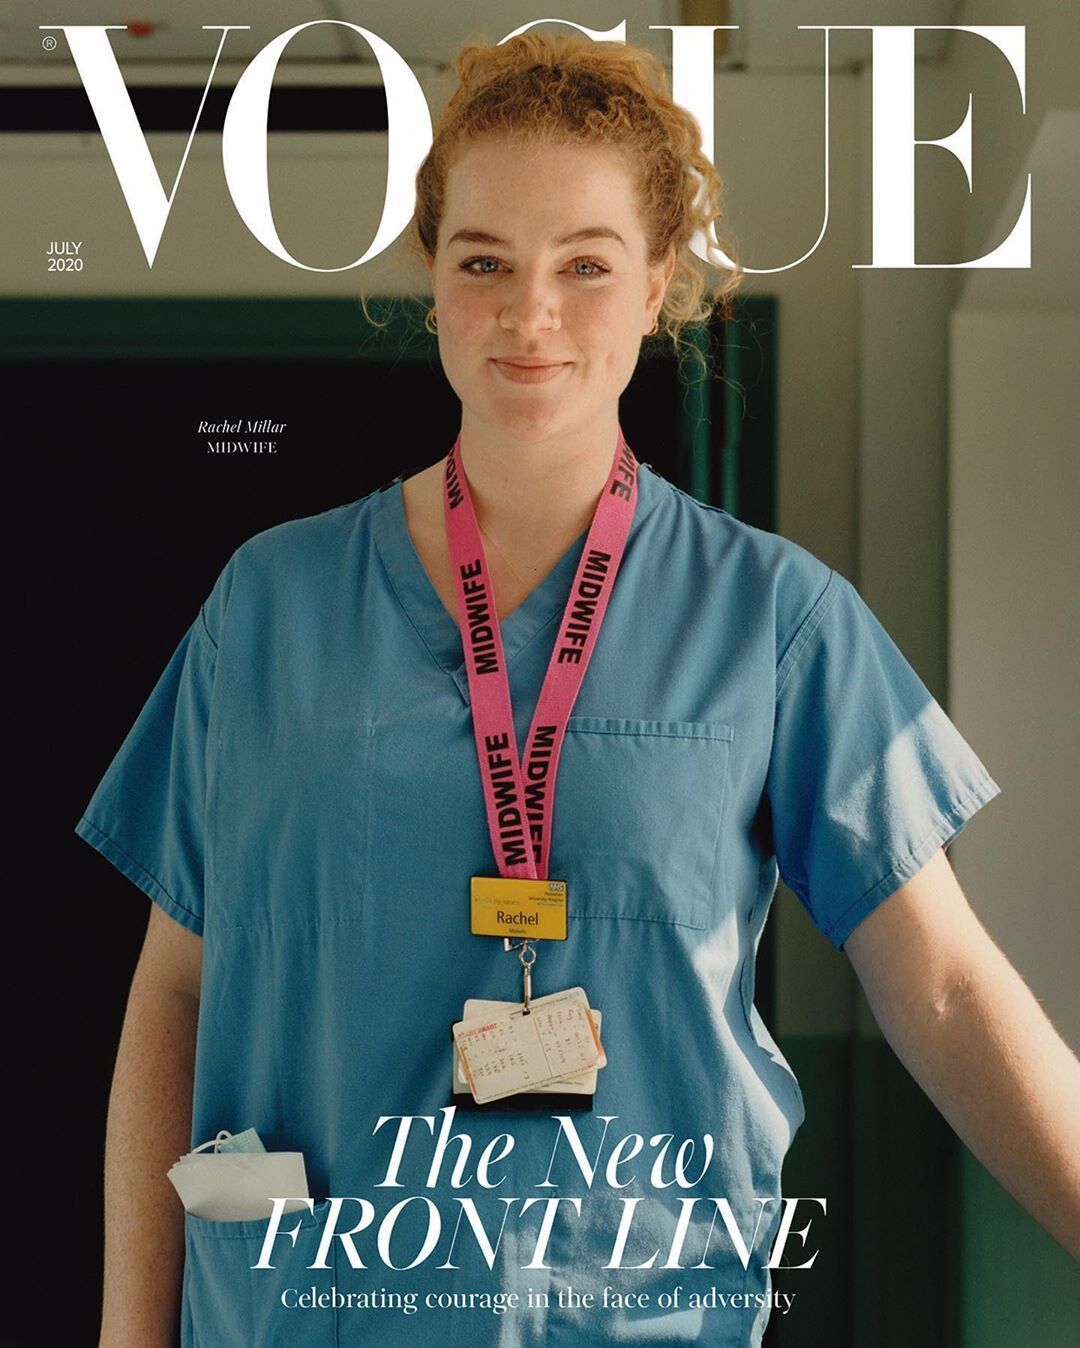 Продавщица и машинистка: Vogue представили неожиданные обложки журнала